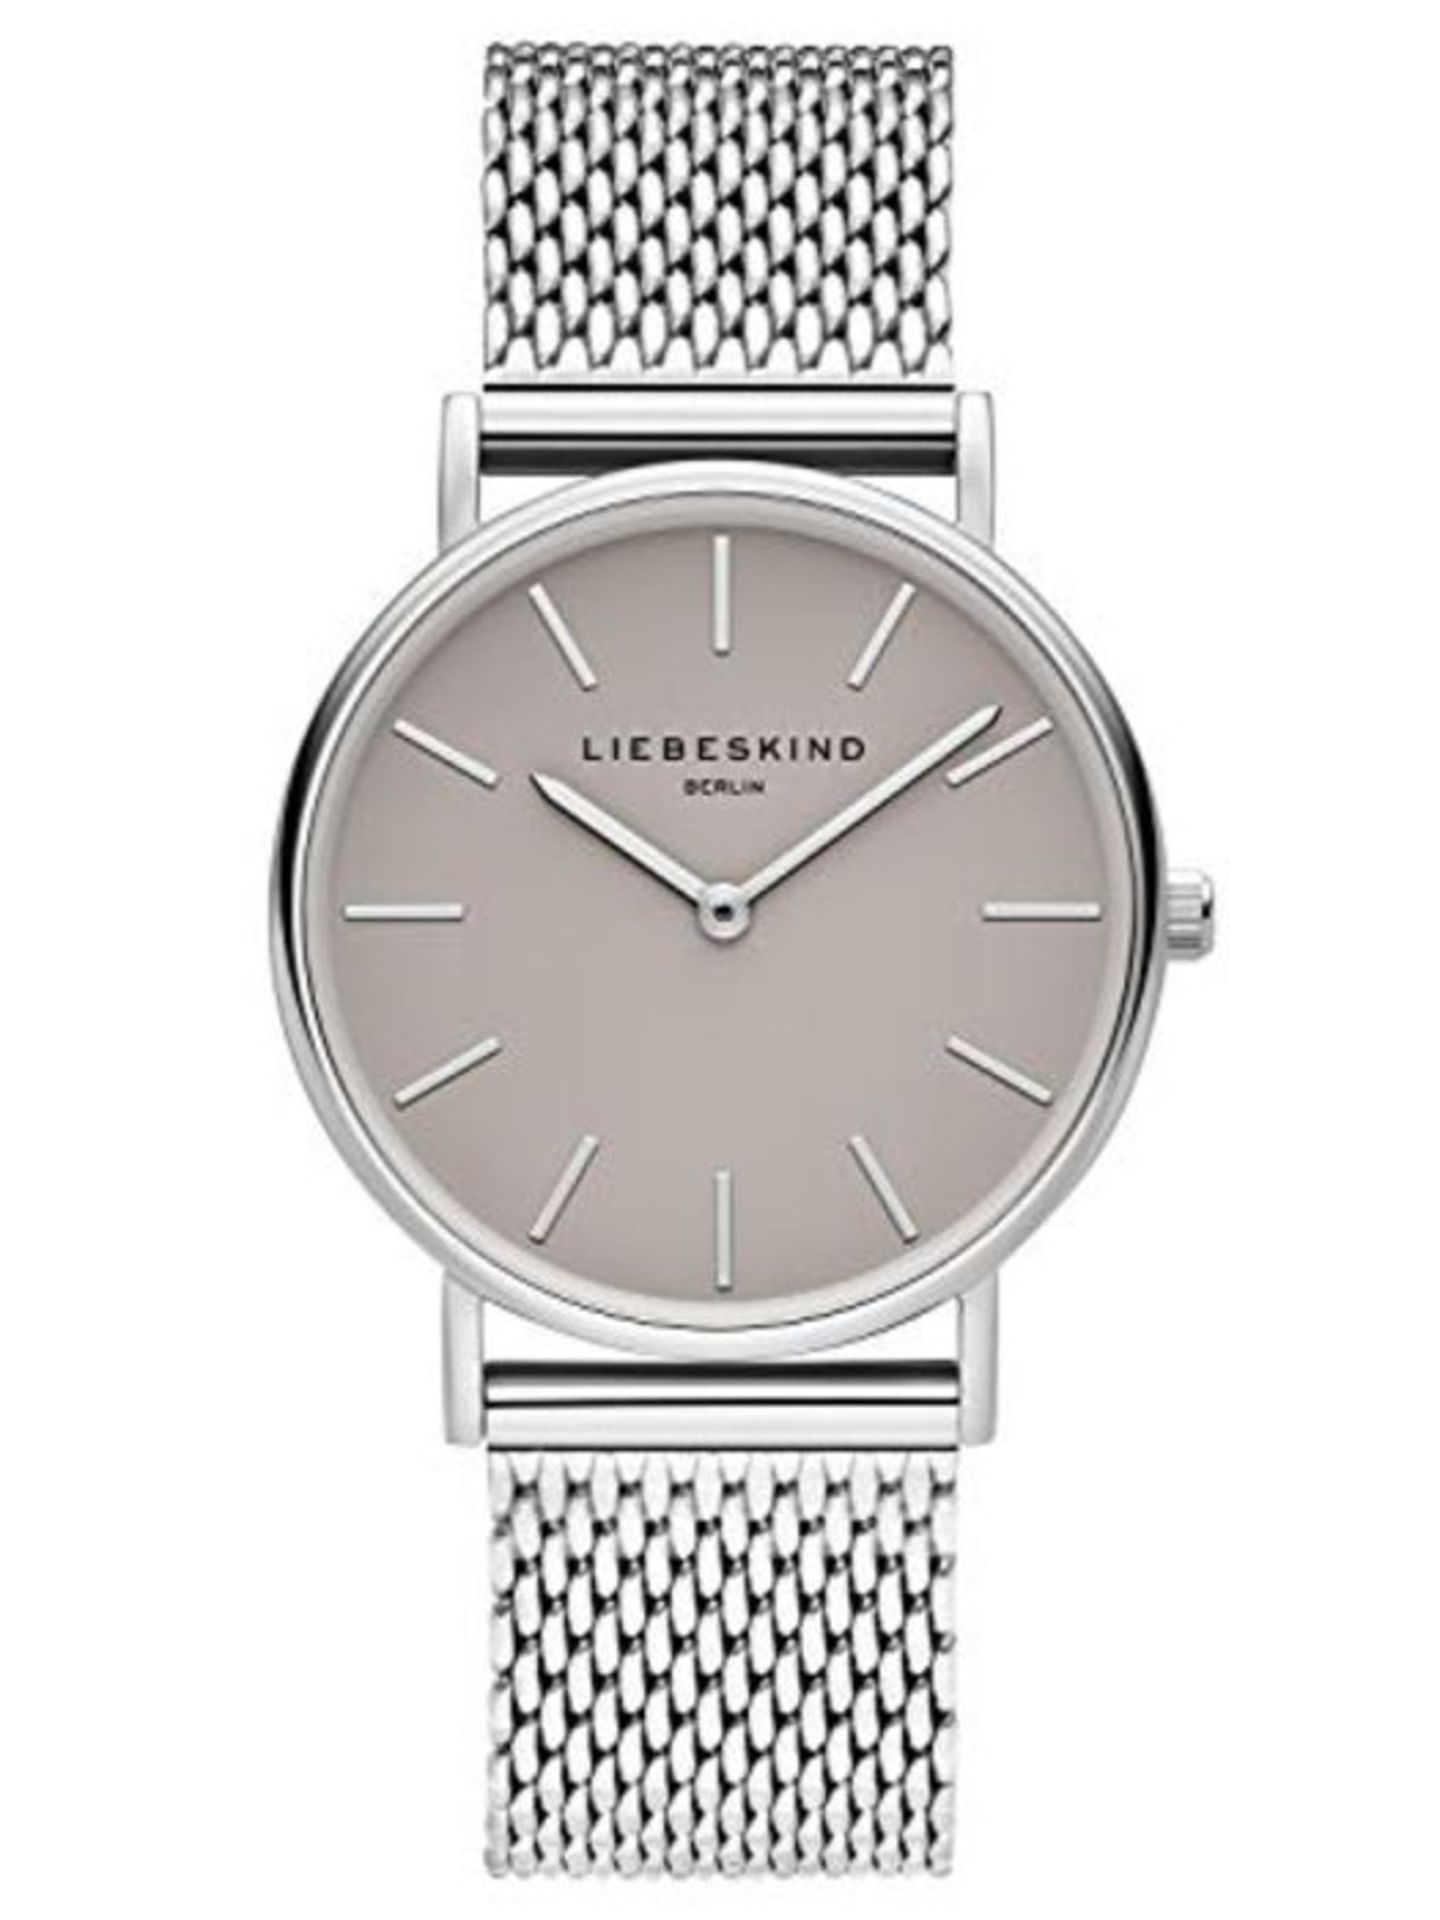 RRP £67.00 Liebeskind Berlin Damen Analog Quarz Uhr mit Edelstahl Armband LT-0169-MQ